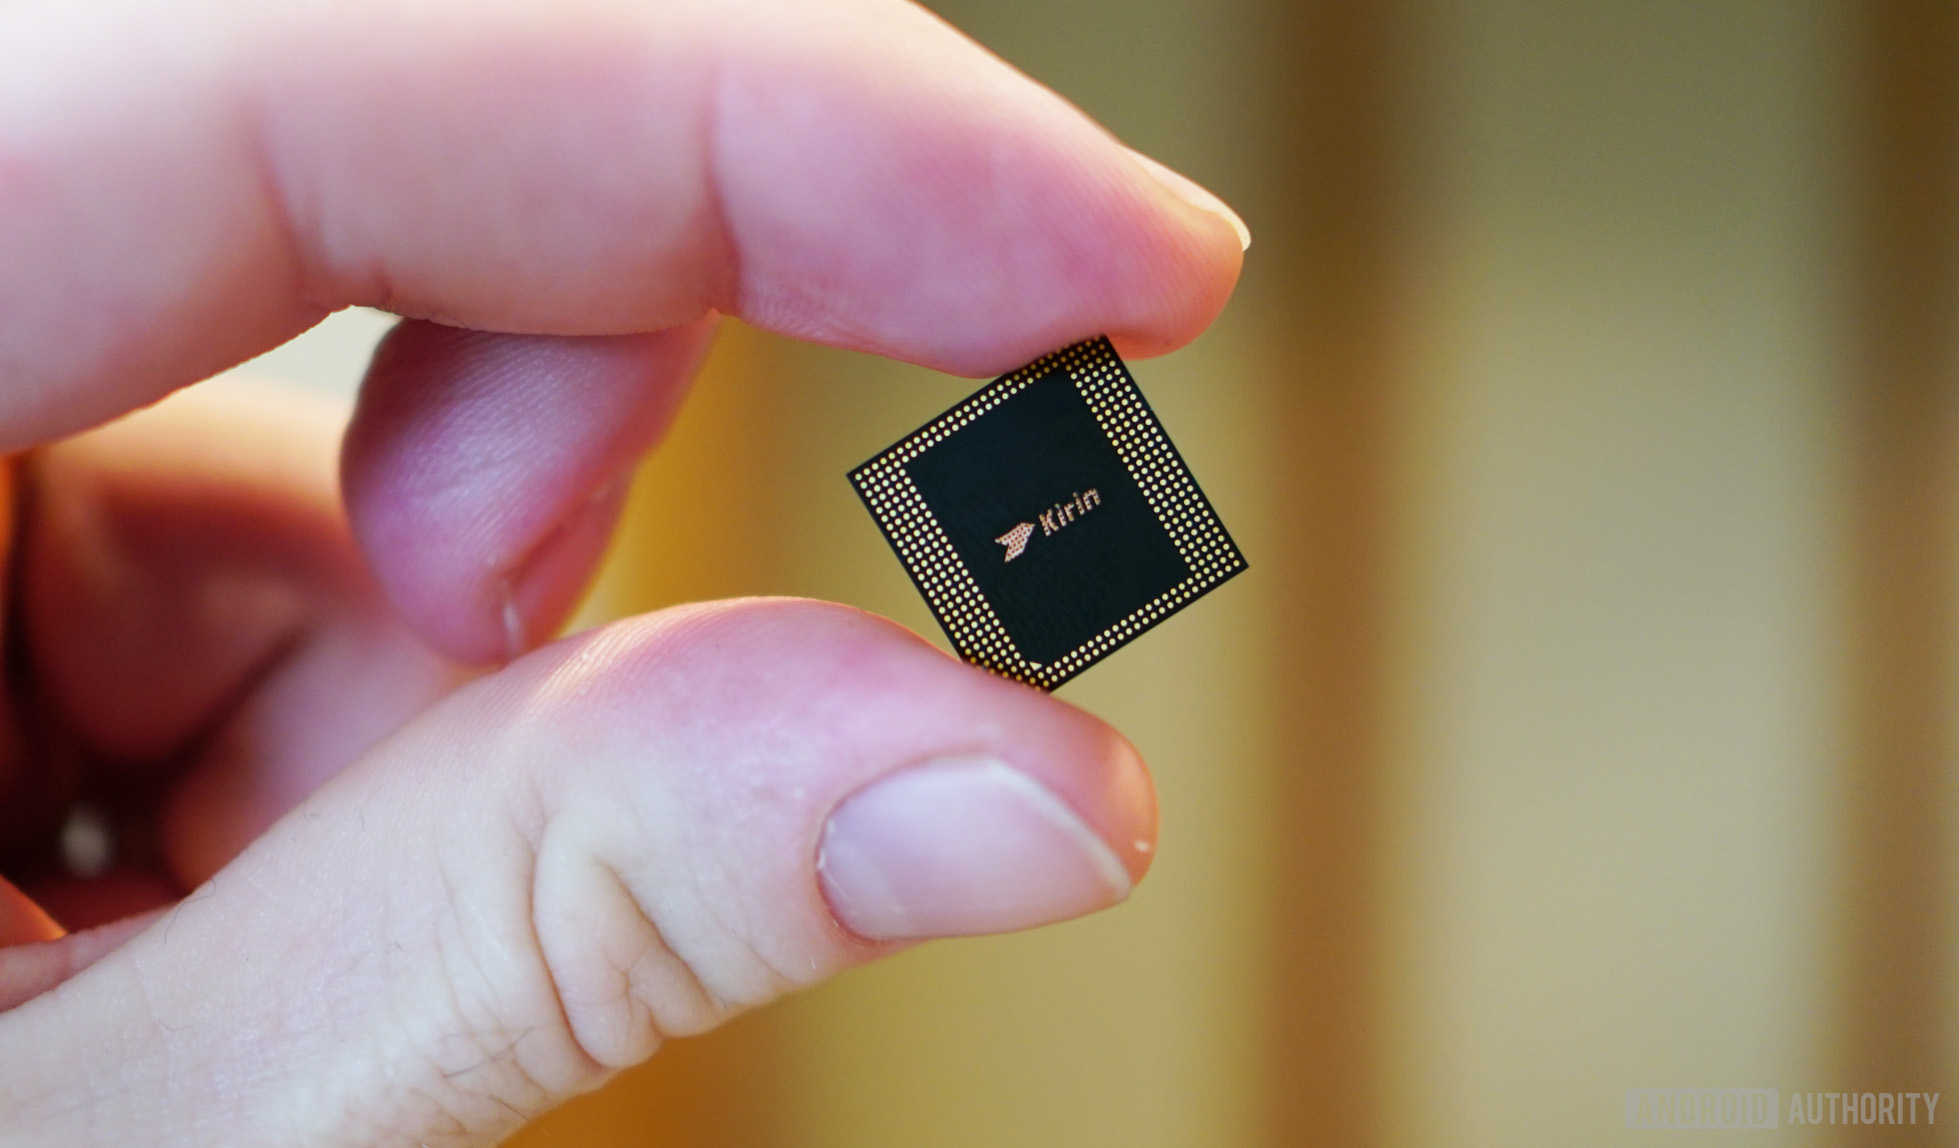 HUAWEI Kirin 980 chip held in between fingers